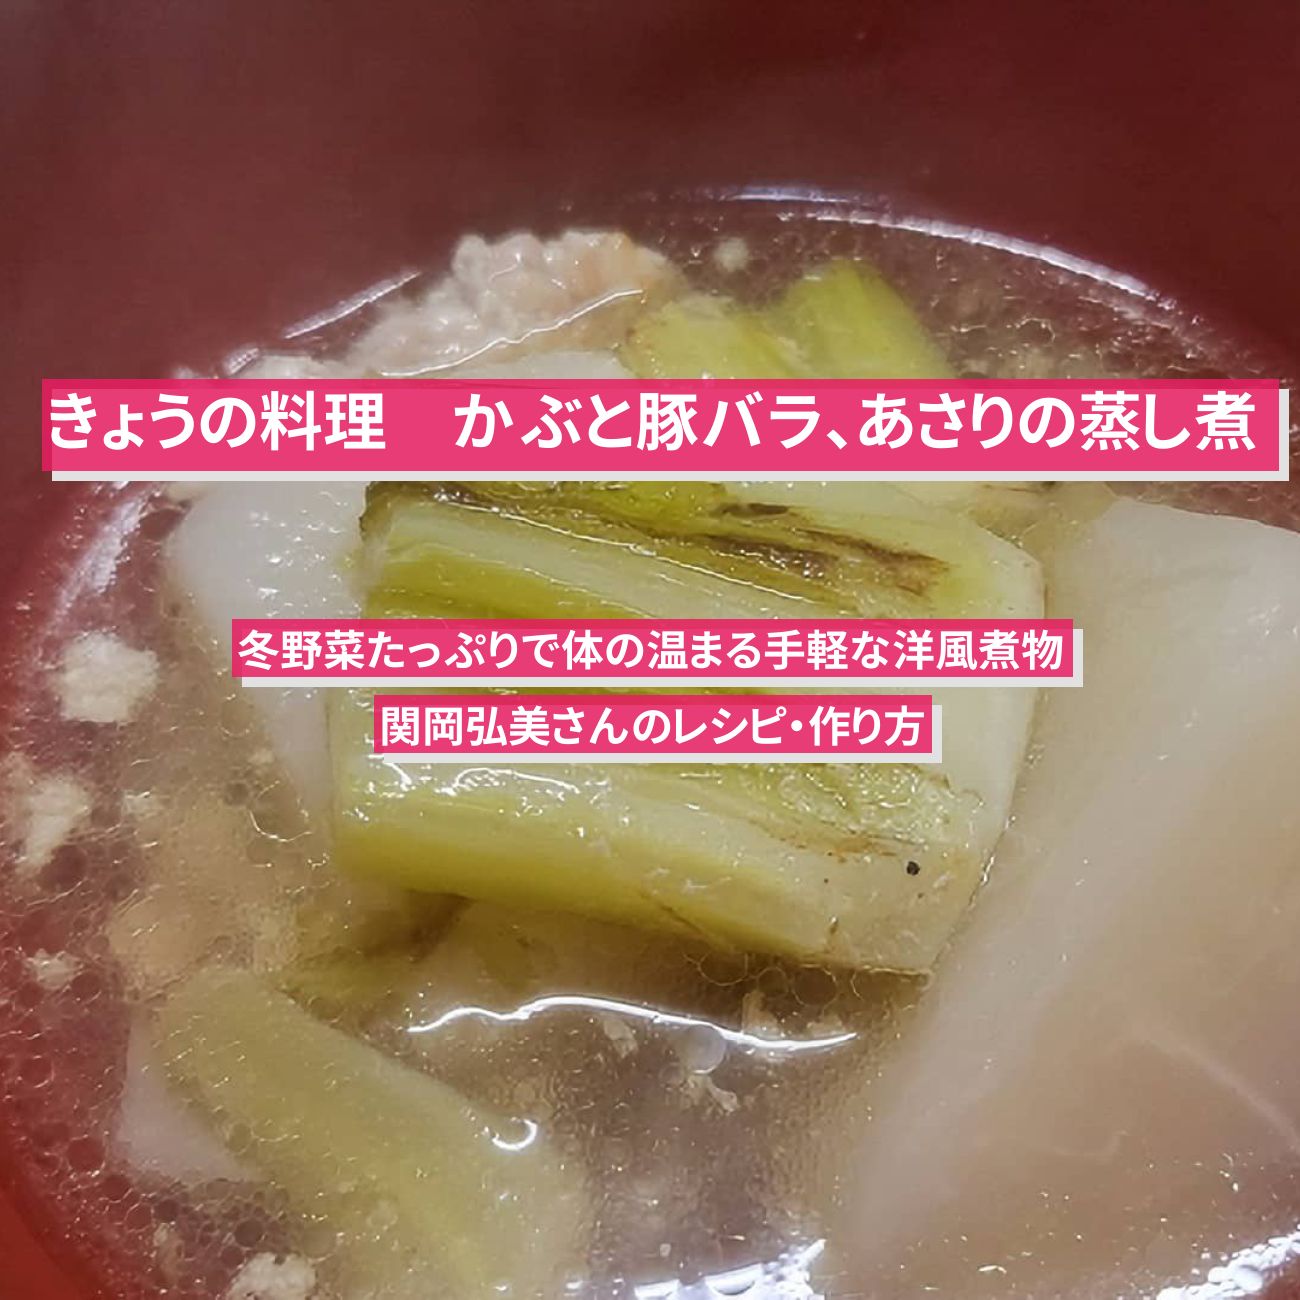 【きょうの料理】『かぶと豚バラ、あさりの蒸し煮』関岡弘美さんのレシピ・作り方